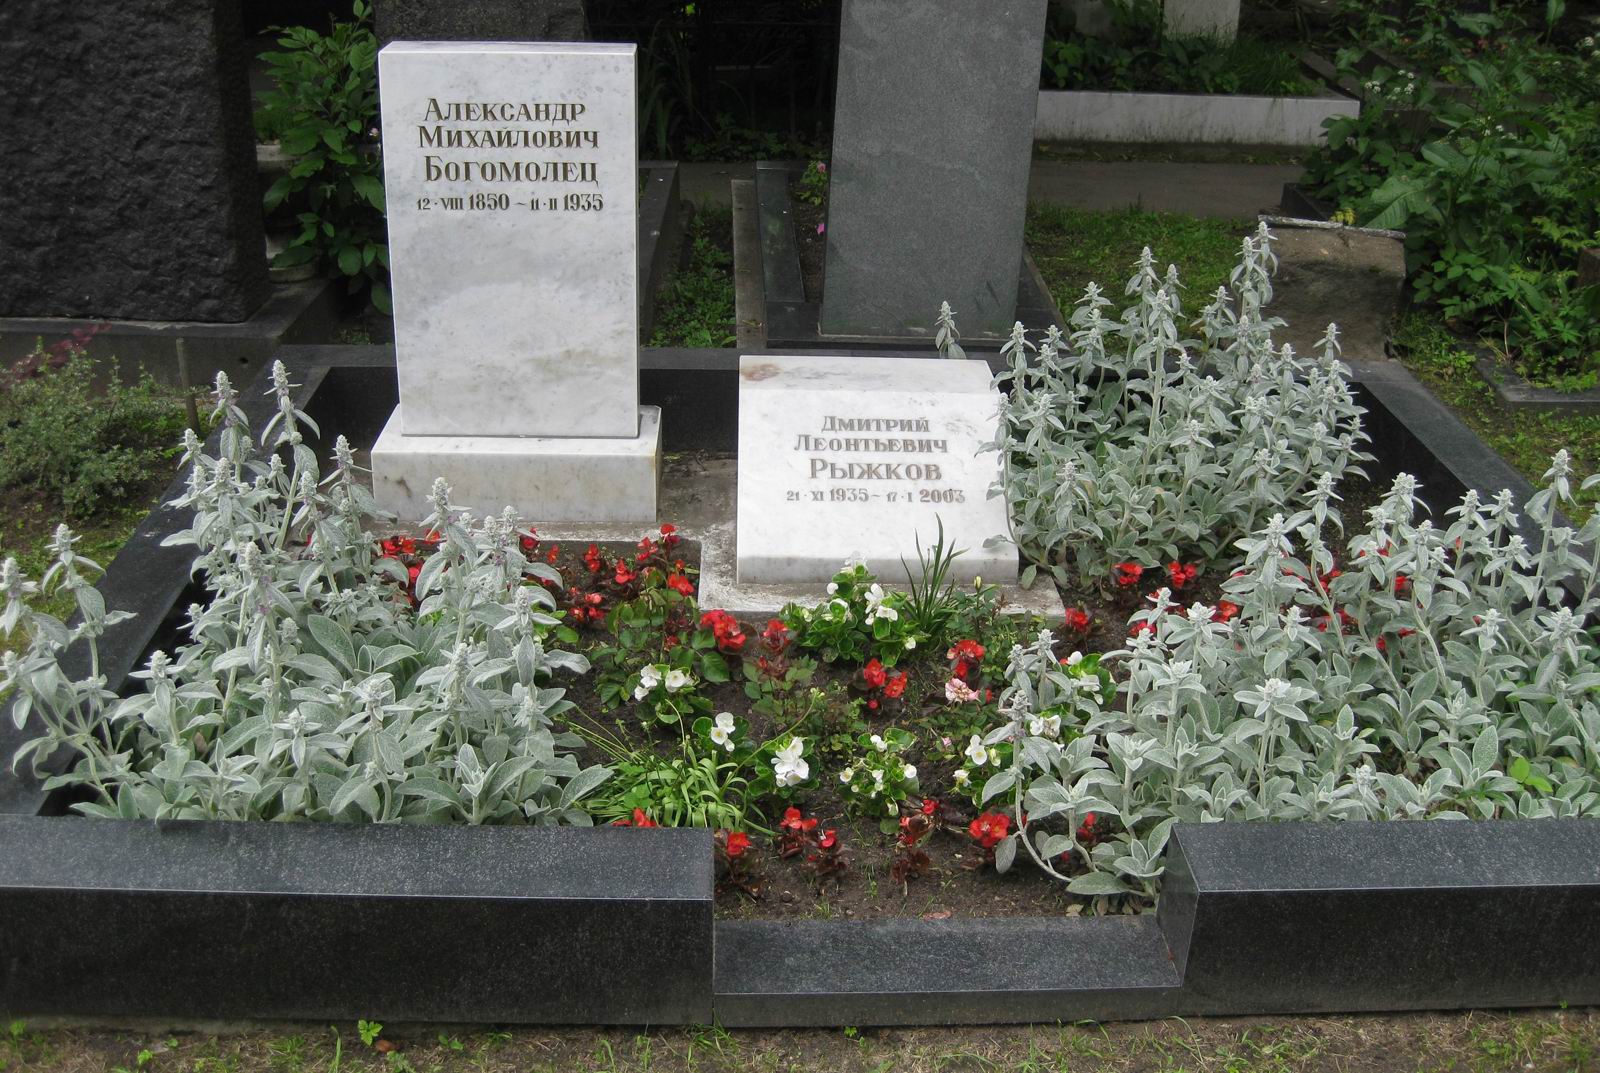 Памятник на могиле Богомольца А.М. (1850–1935), на Новодевичьем кладбище (4–1–4).